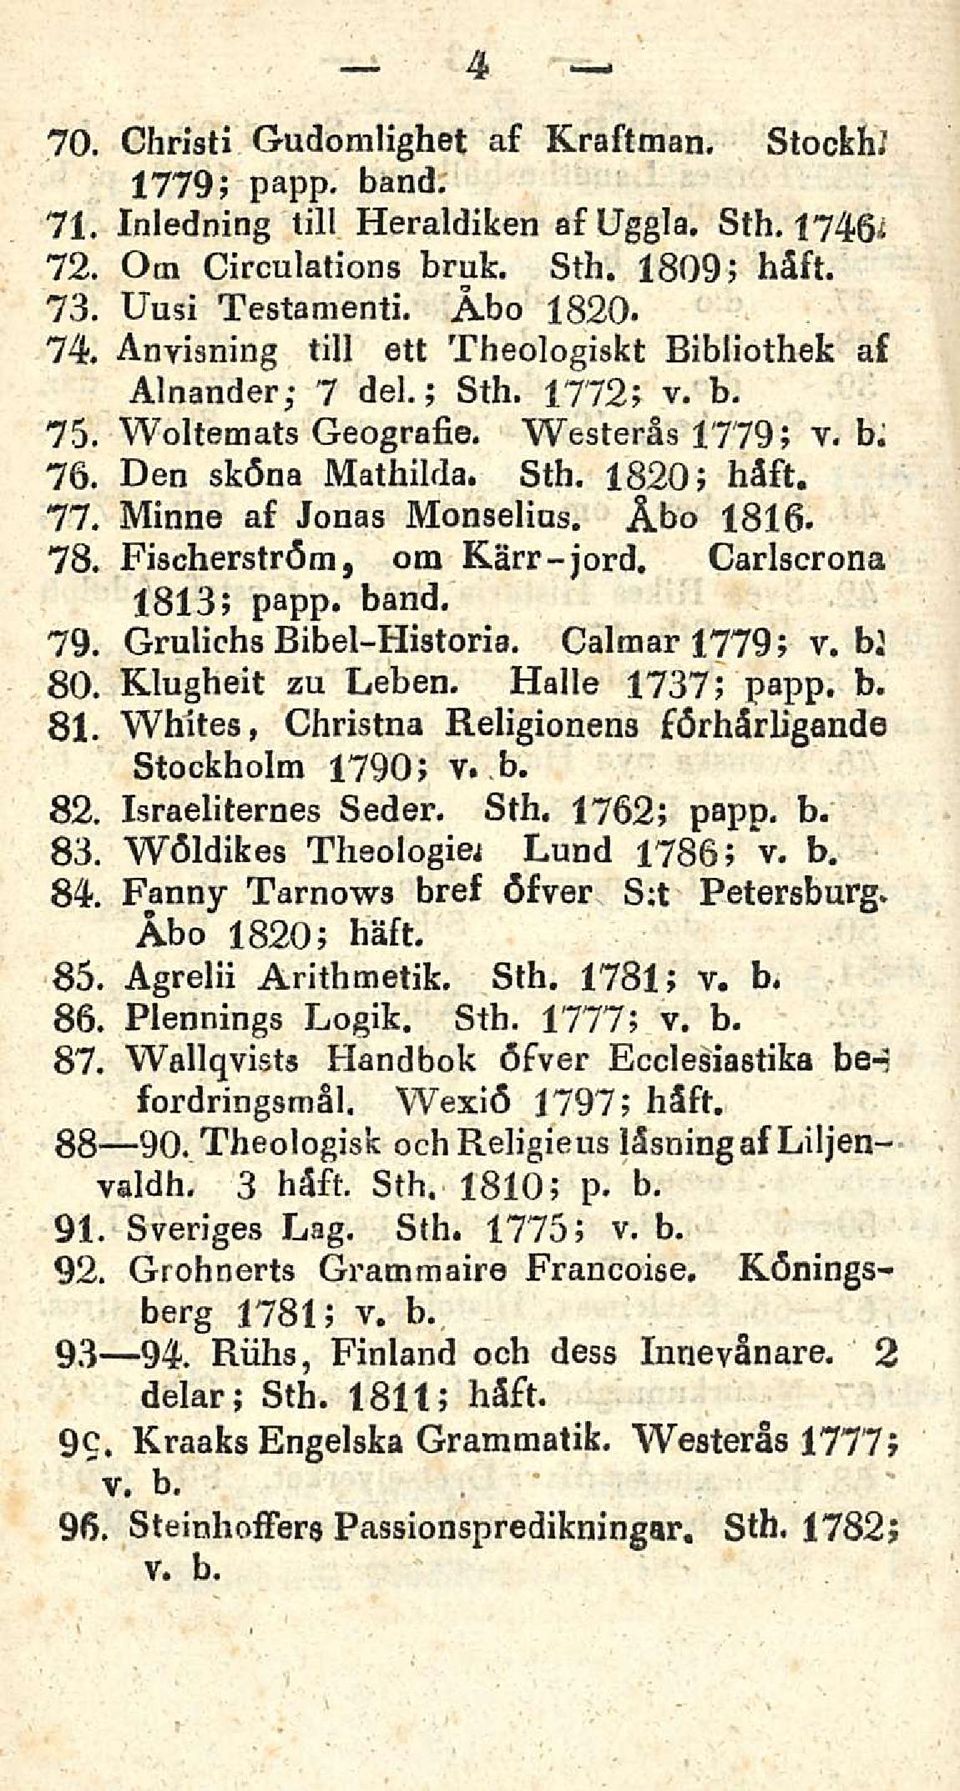 Åbo 1816. 78. Fischerström, om Kärr-jord. Carlscrona 1813; papp* band. 79. Grulichs Bibel-Historia. CalmarJ.779; v. bl 80. Klugheit zu Leben. Kalle 1737; papp. b. 81.